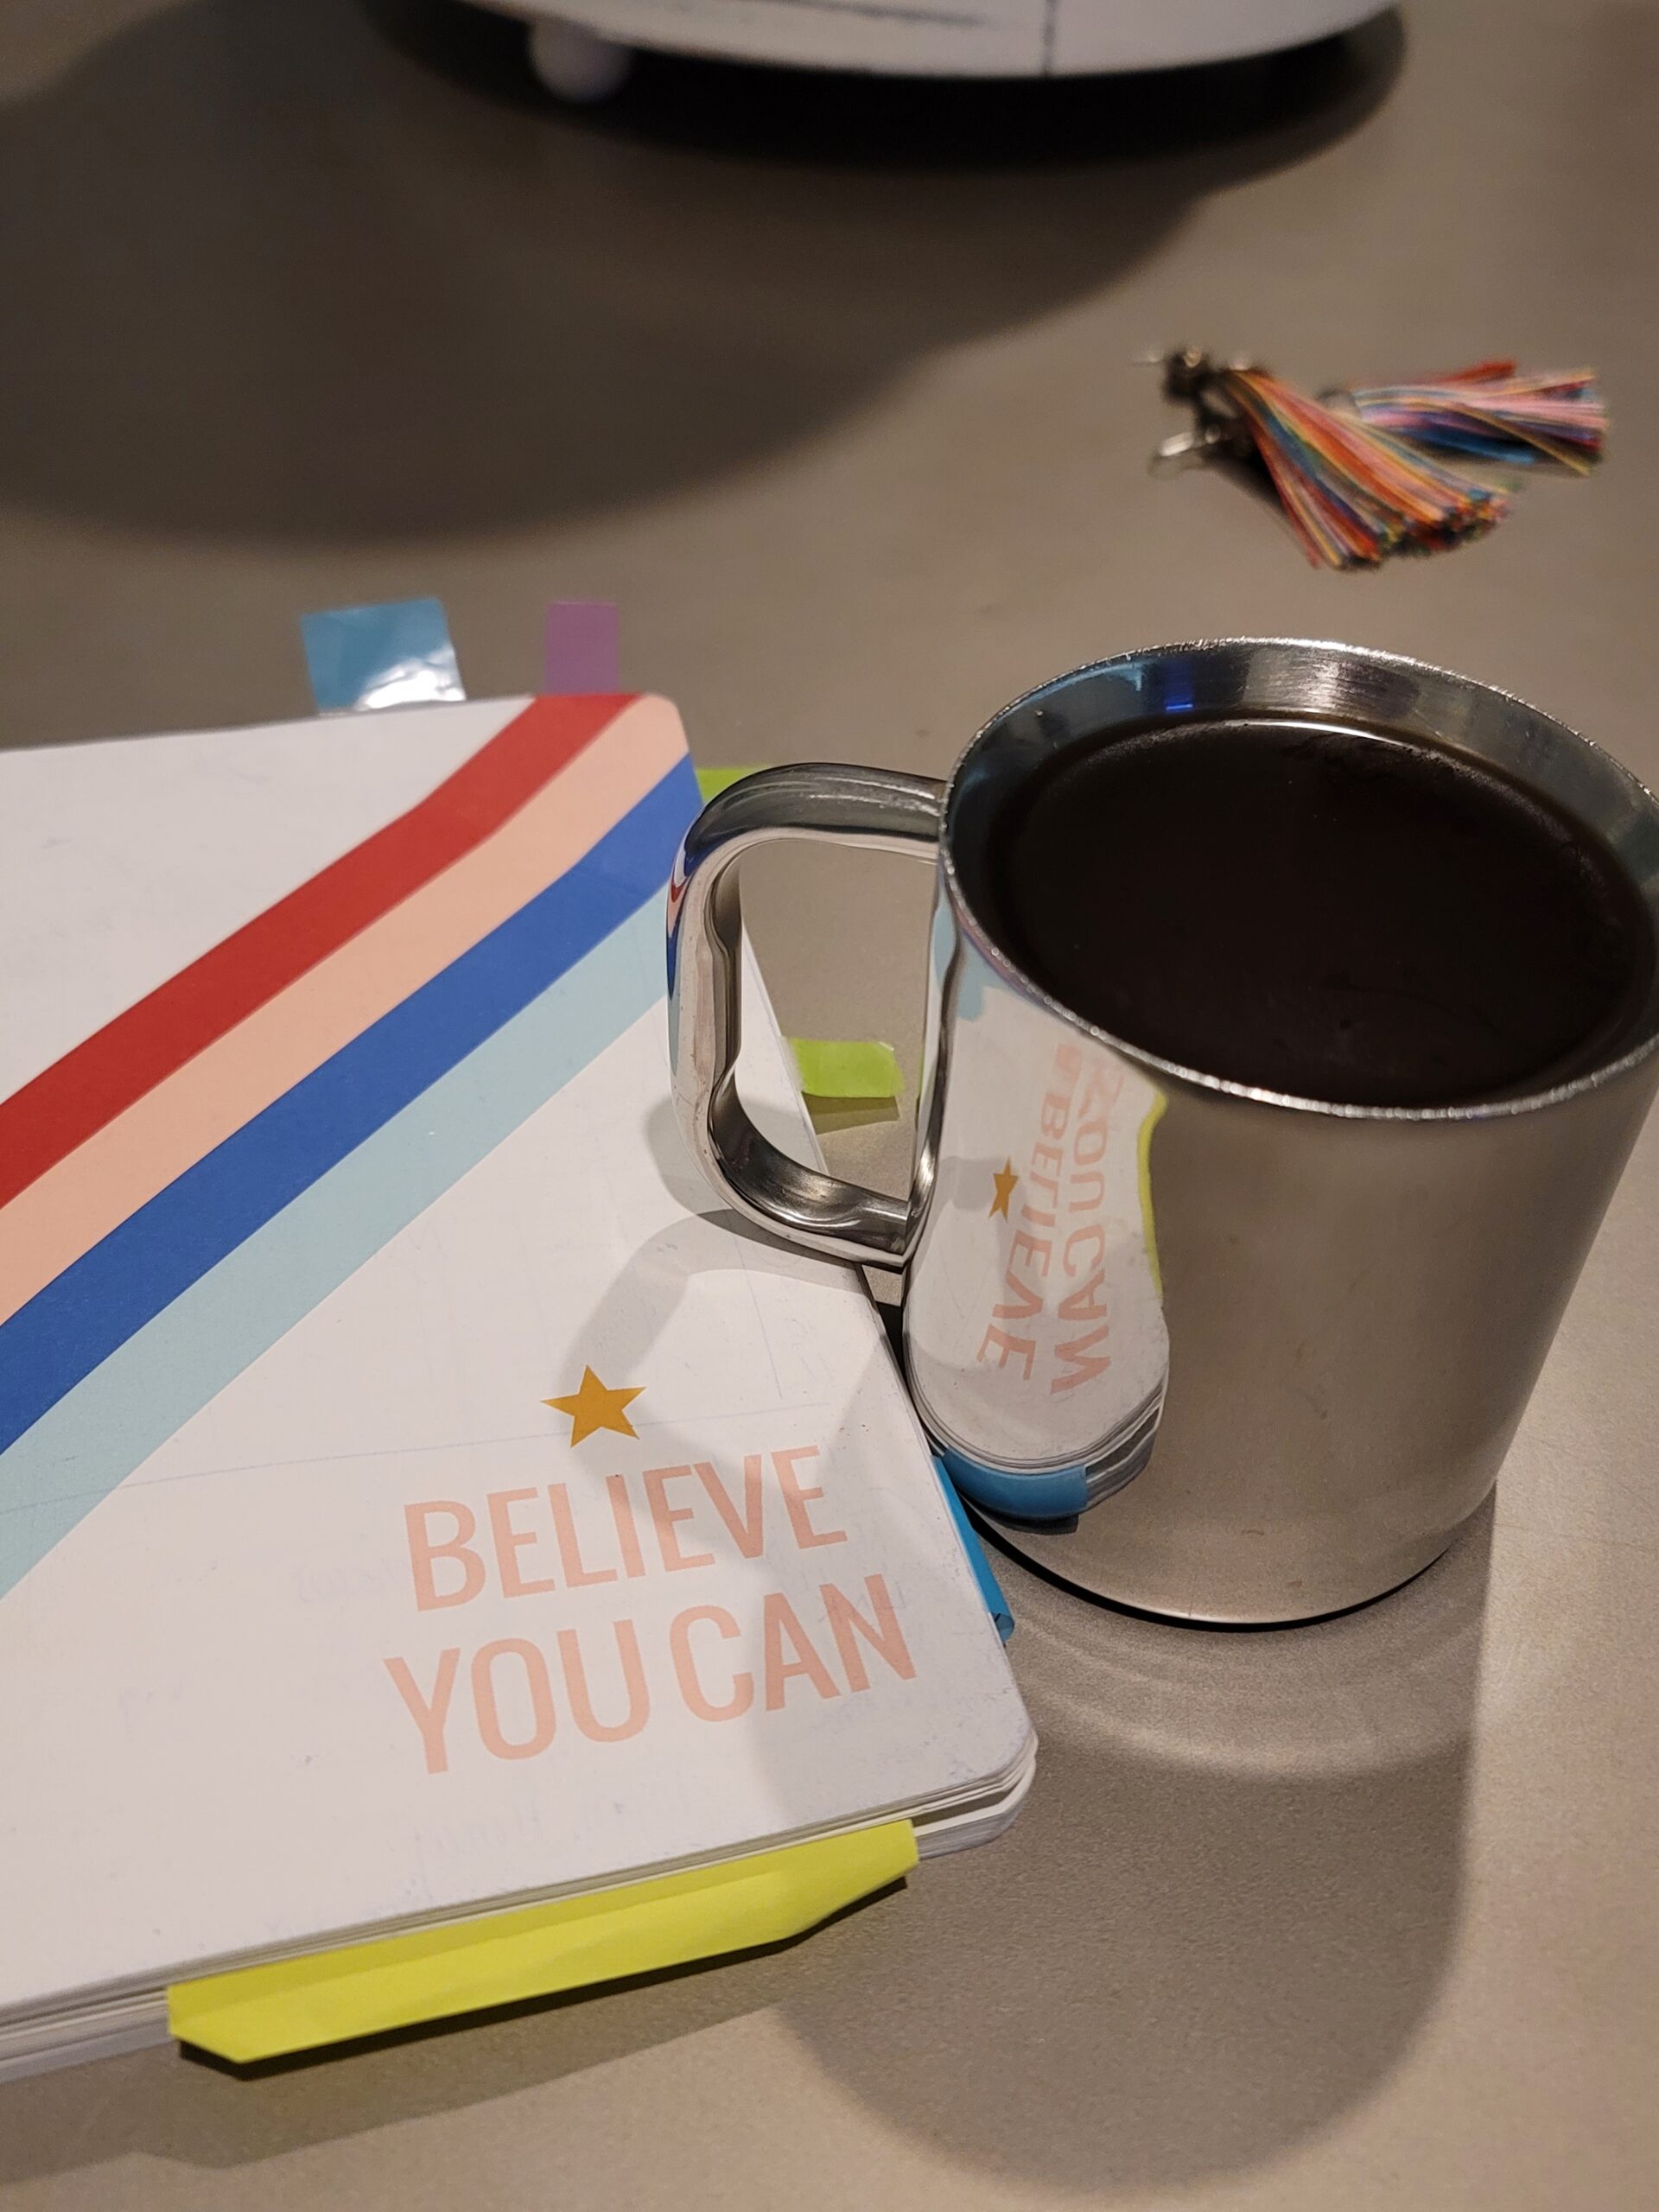 coffee and believe you can mug